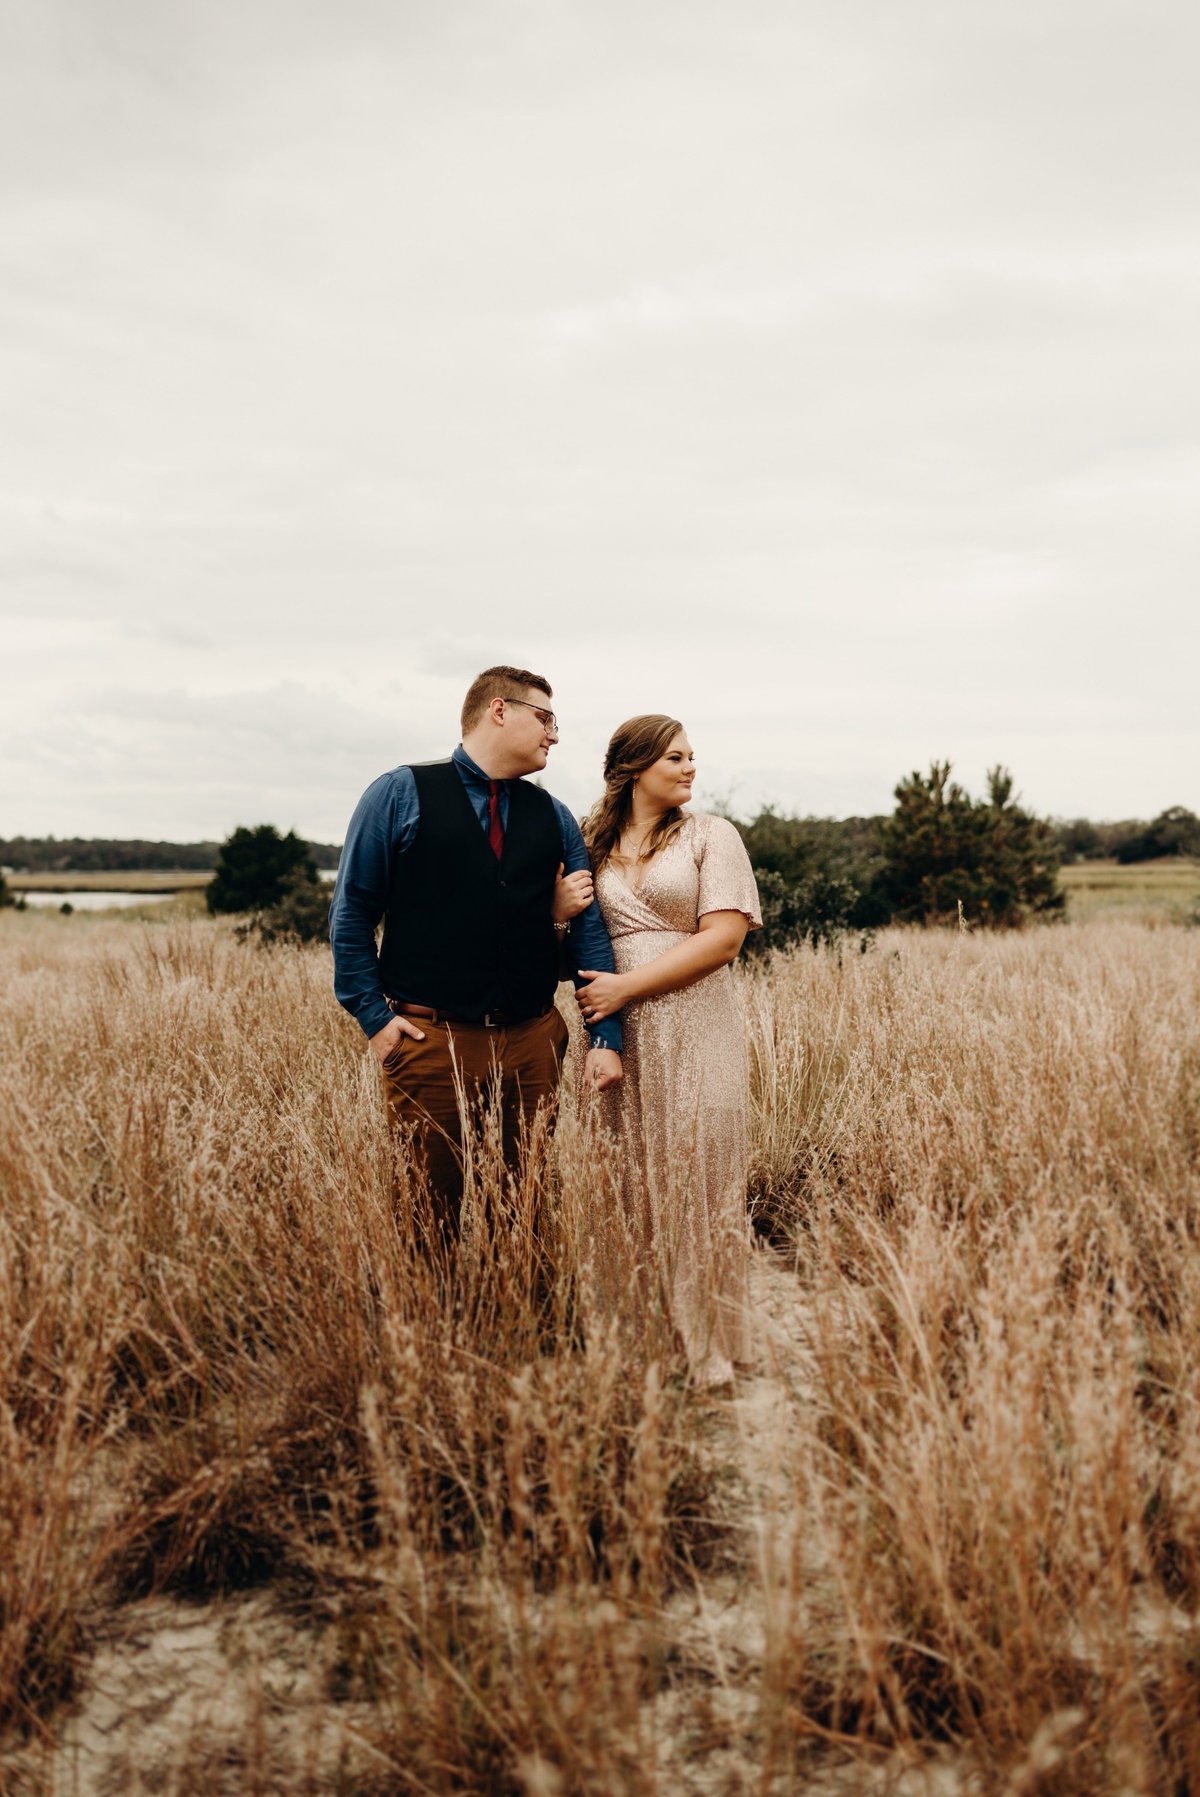 Wedding in a Field